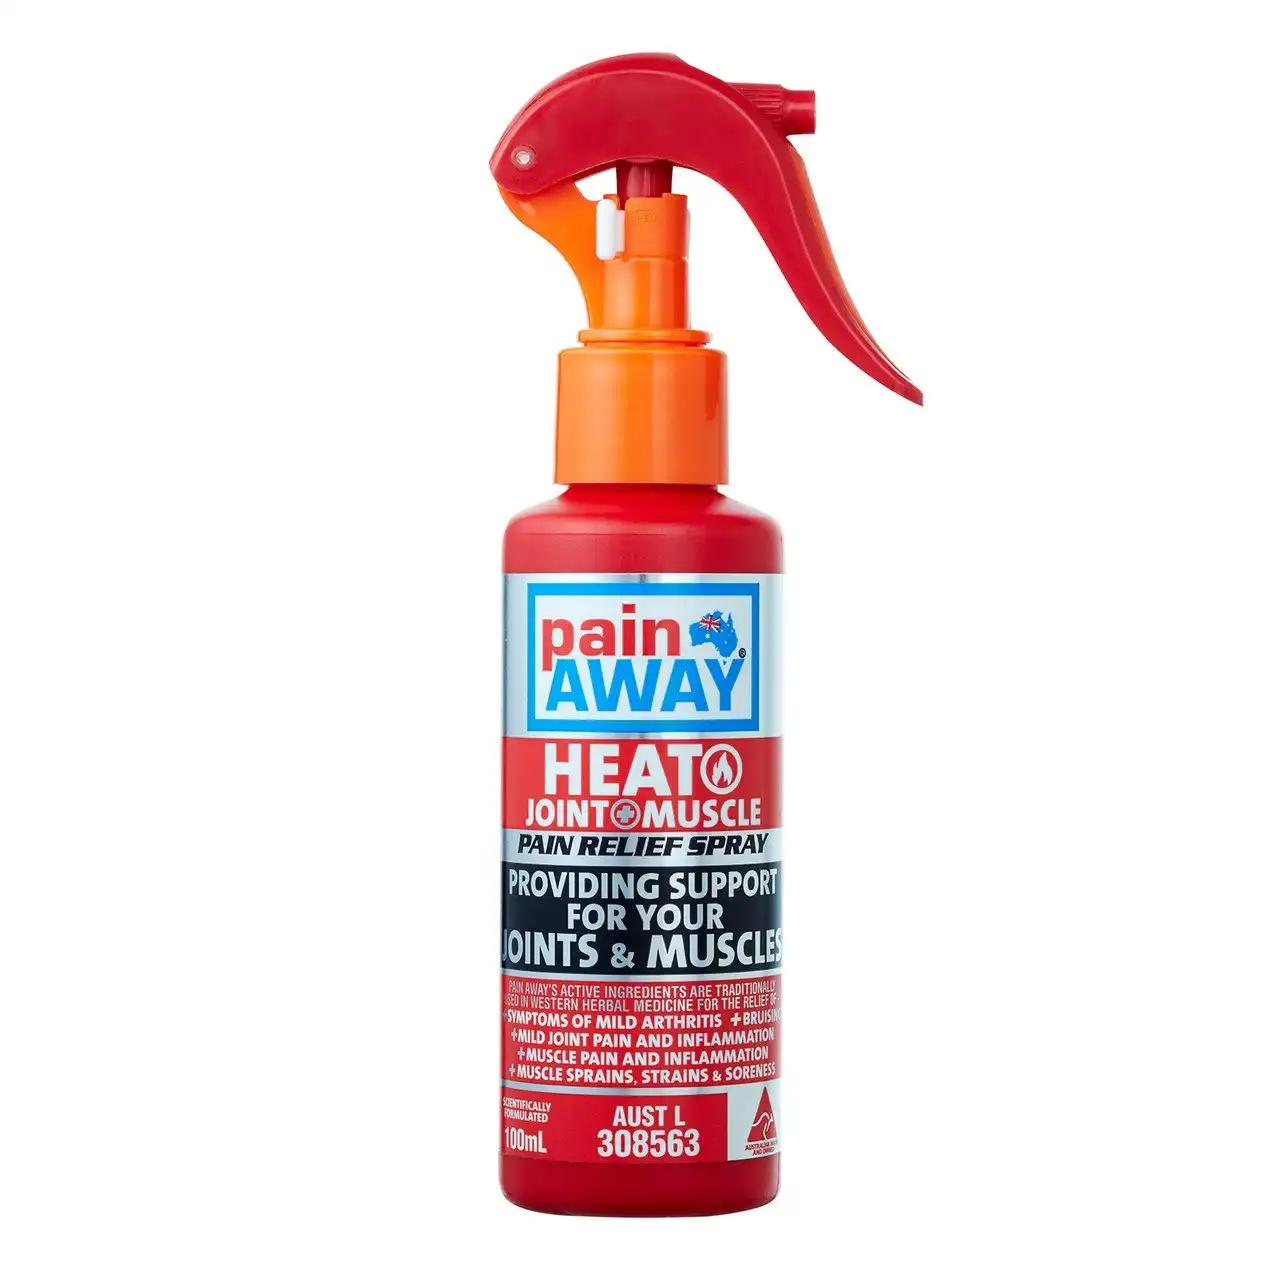 Pain Away Heat Spray 100ml